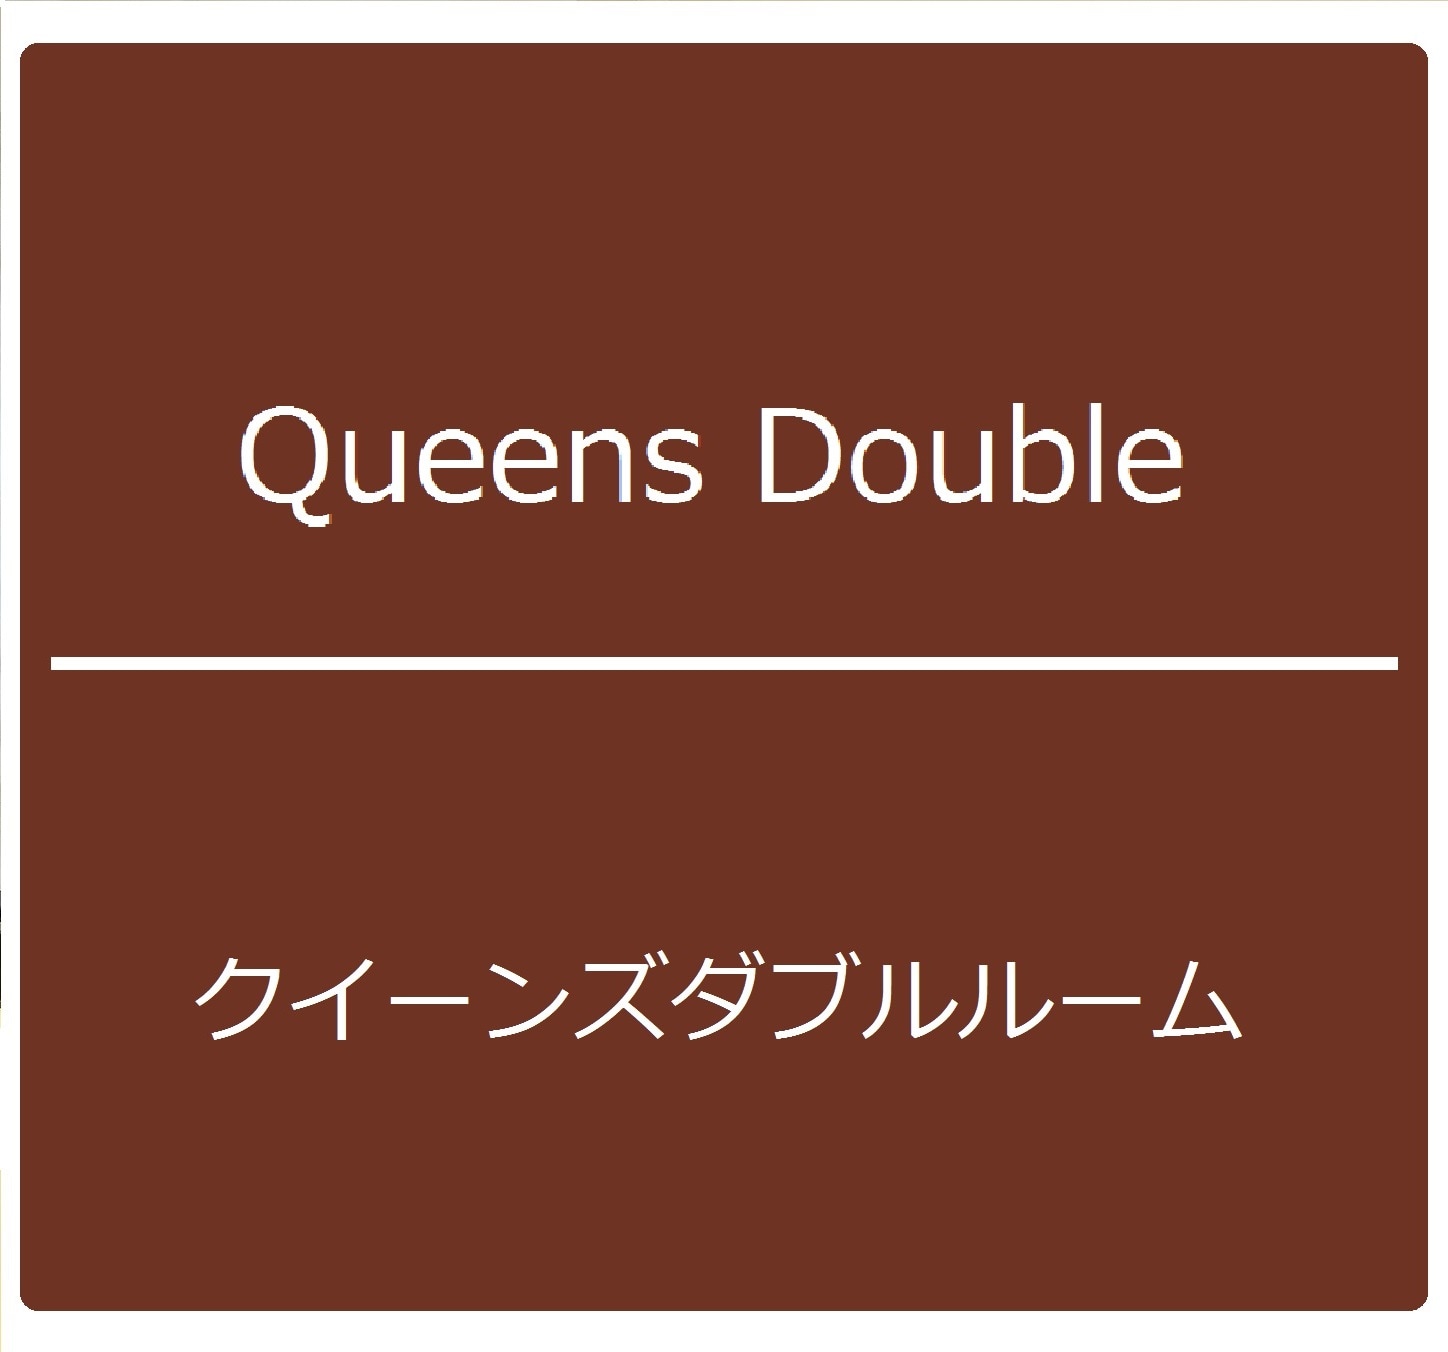 Queens Double